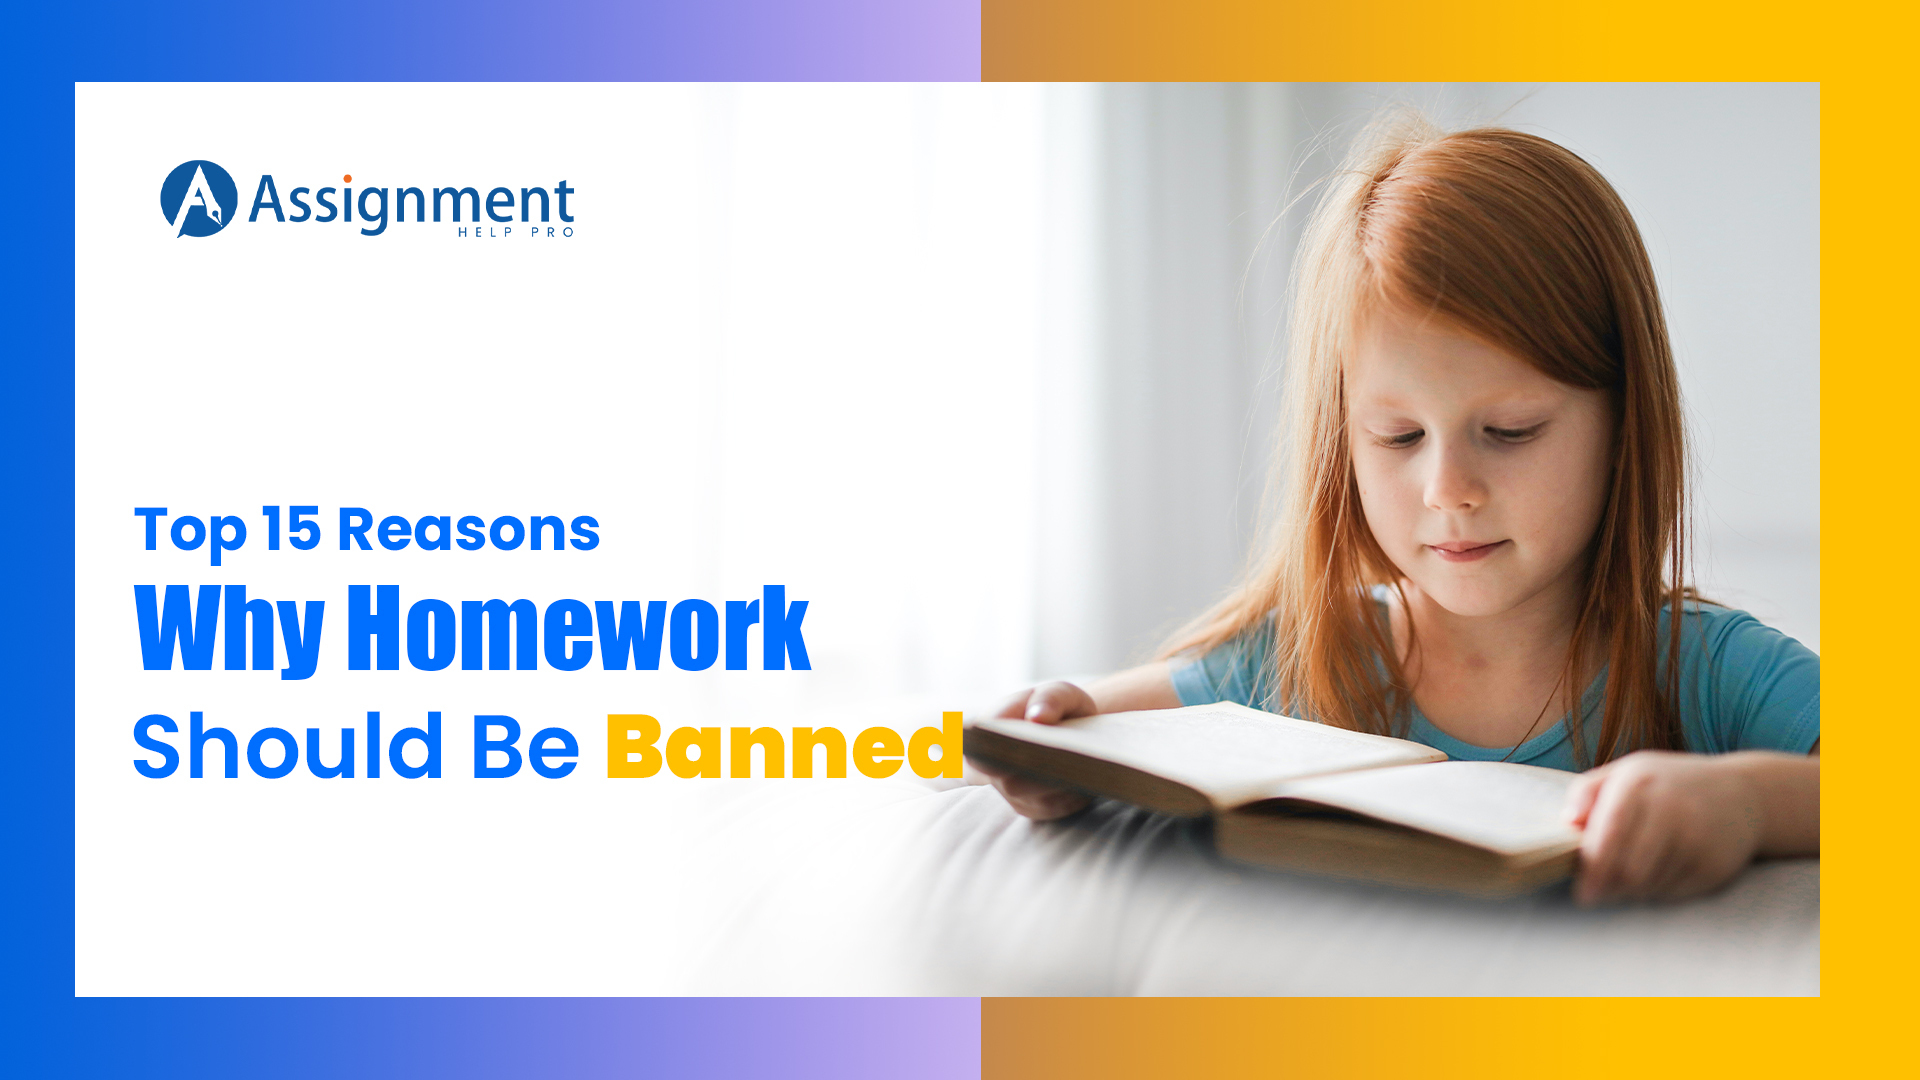 argument homework should be banned